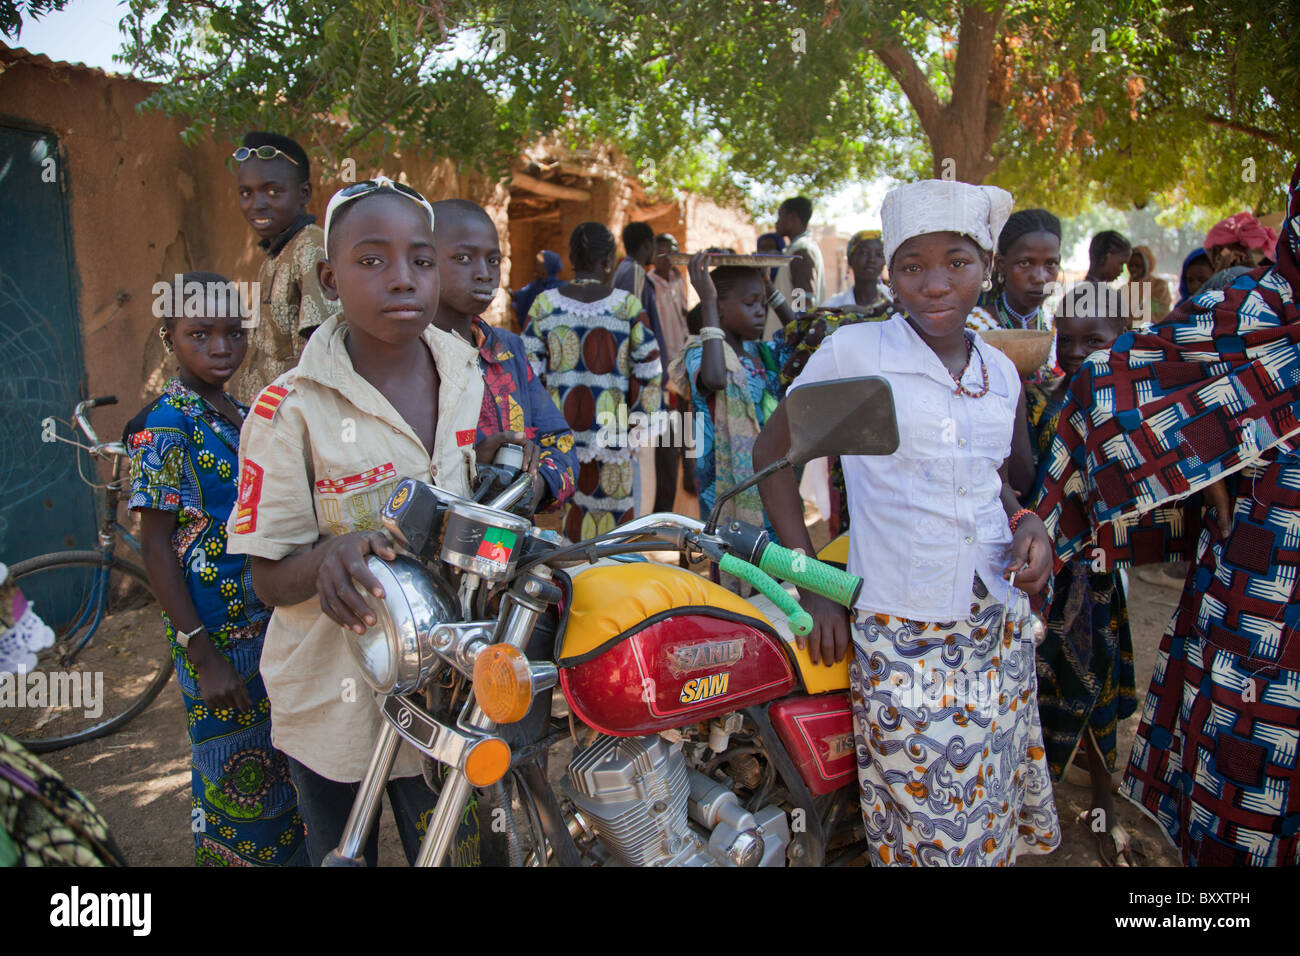 Les enfants au marché de village peul de Bourro dans le nord du Burkina Faso. Banque D'Images